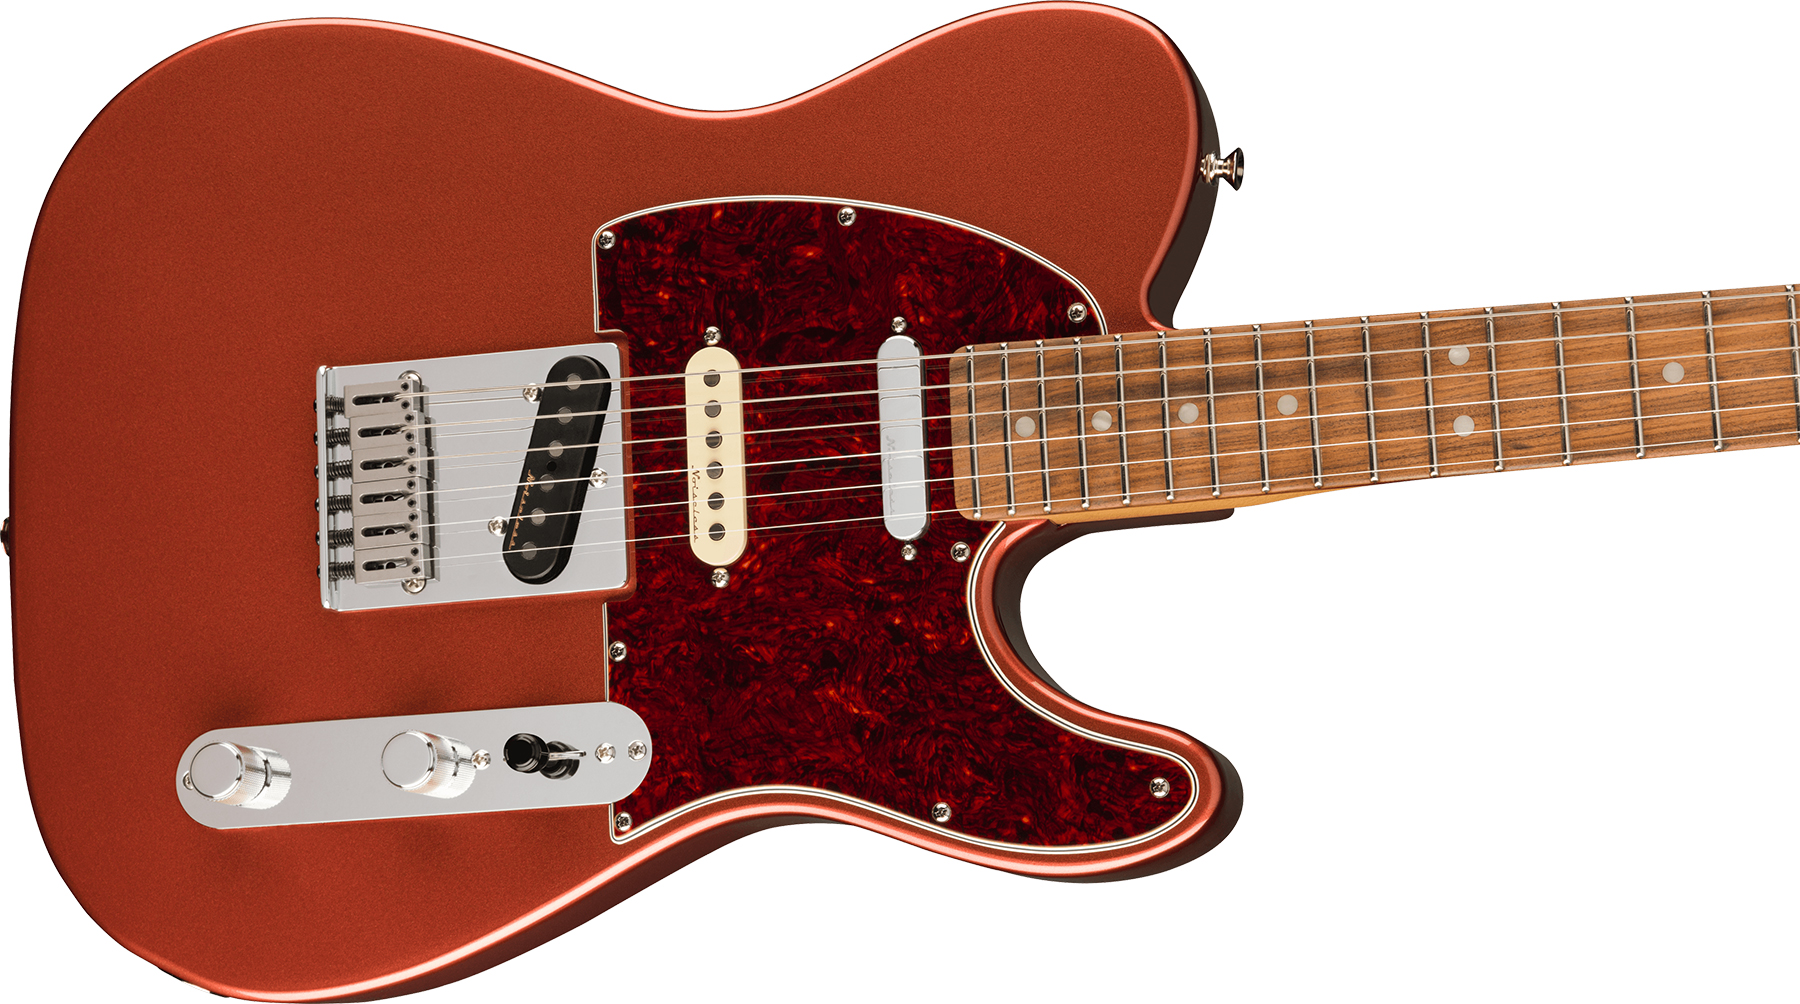 Fender Tele Player Plus Nashville Mex 3s Ht Pf - Aged Candy Apple Red - Televorm elektrische gitaar - Variation 2